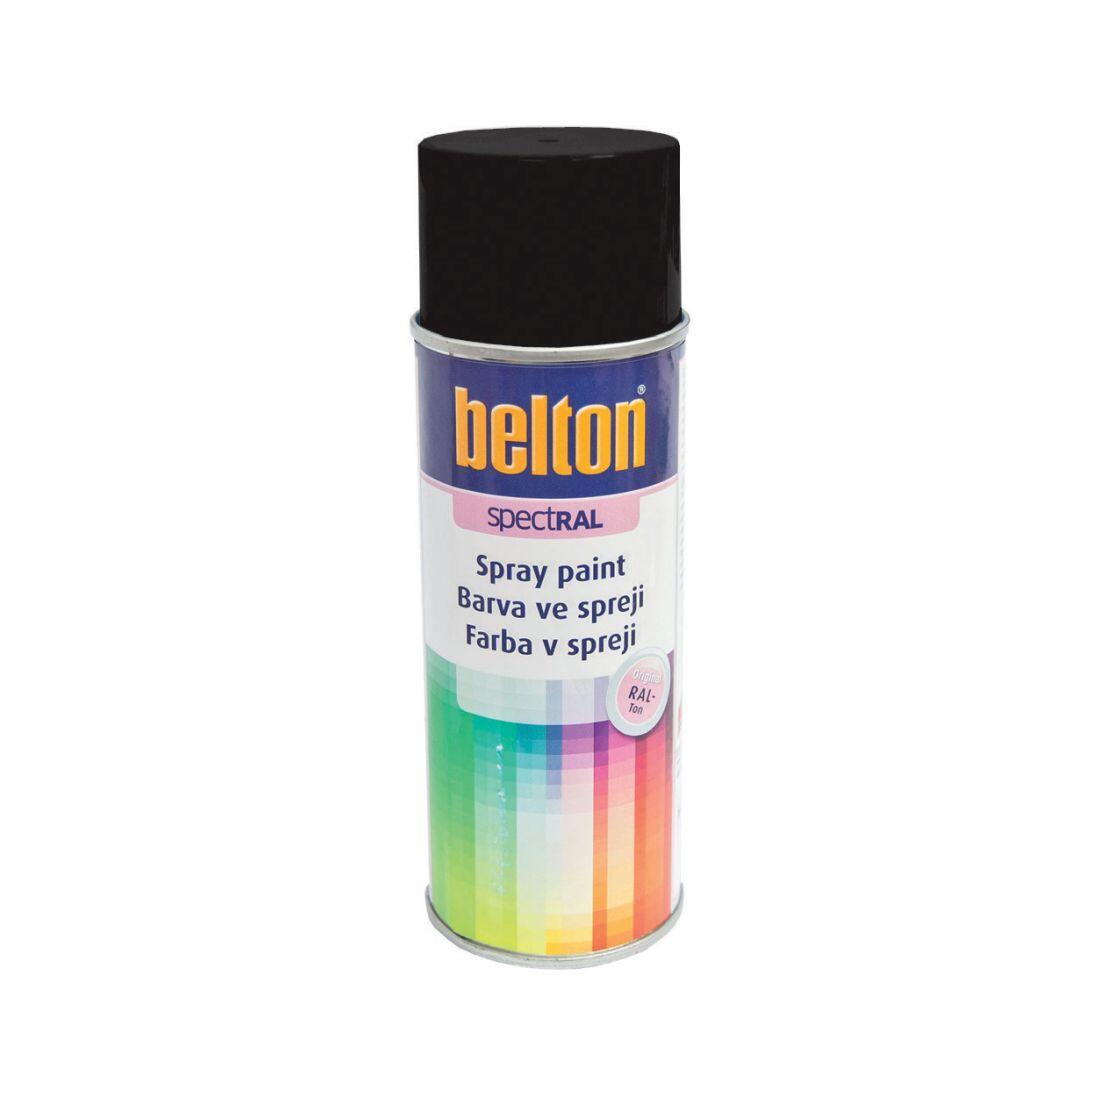 barva ve spreji BELTON RAL 9005, 400ml ČER 0.31 Kg MAXMIX Sklad14 825120 40